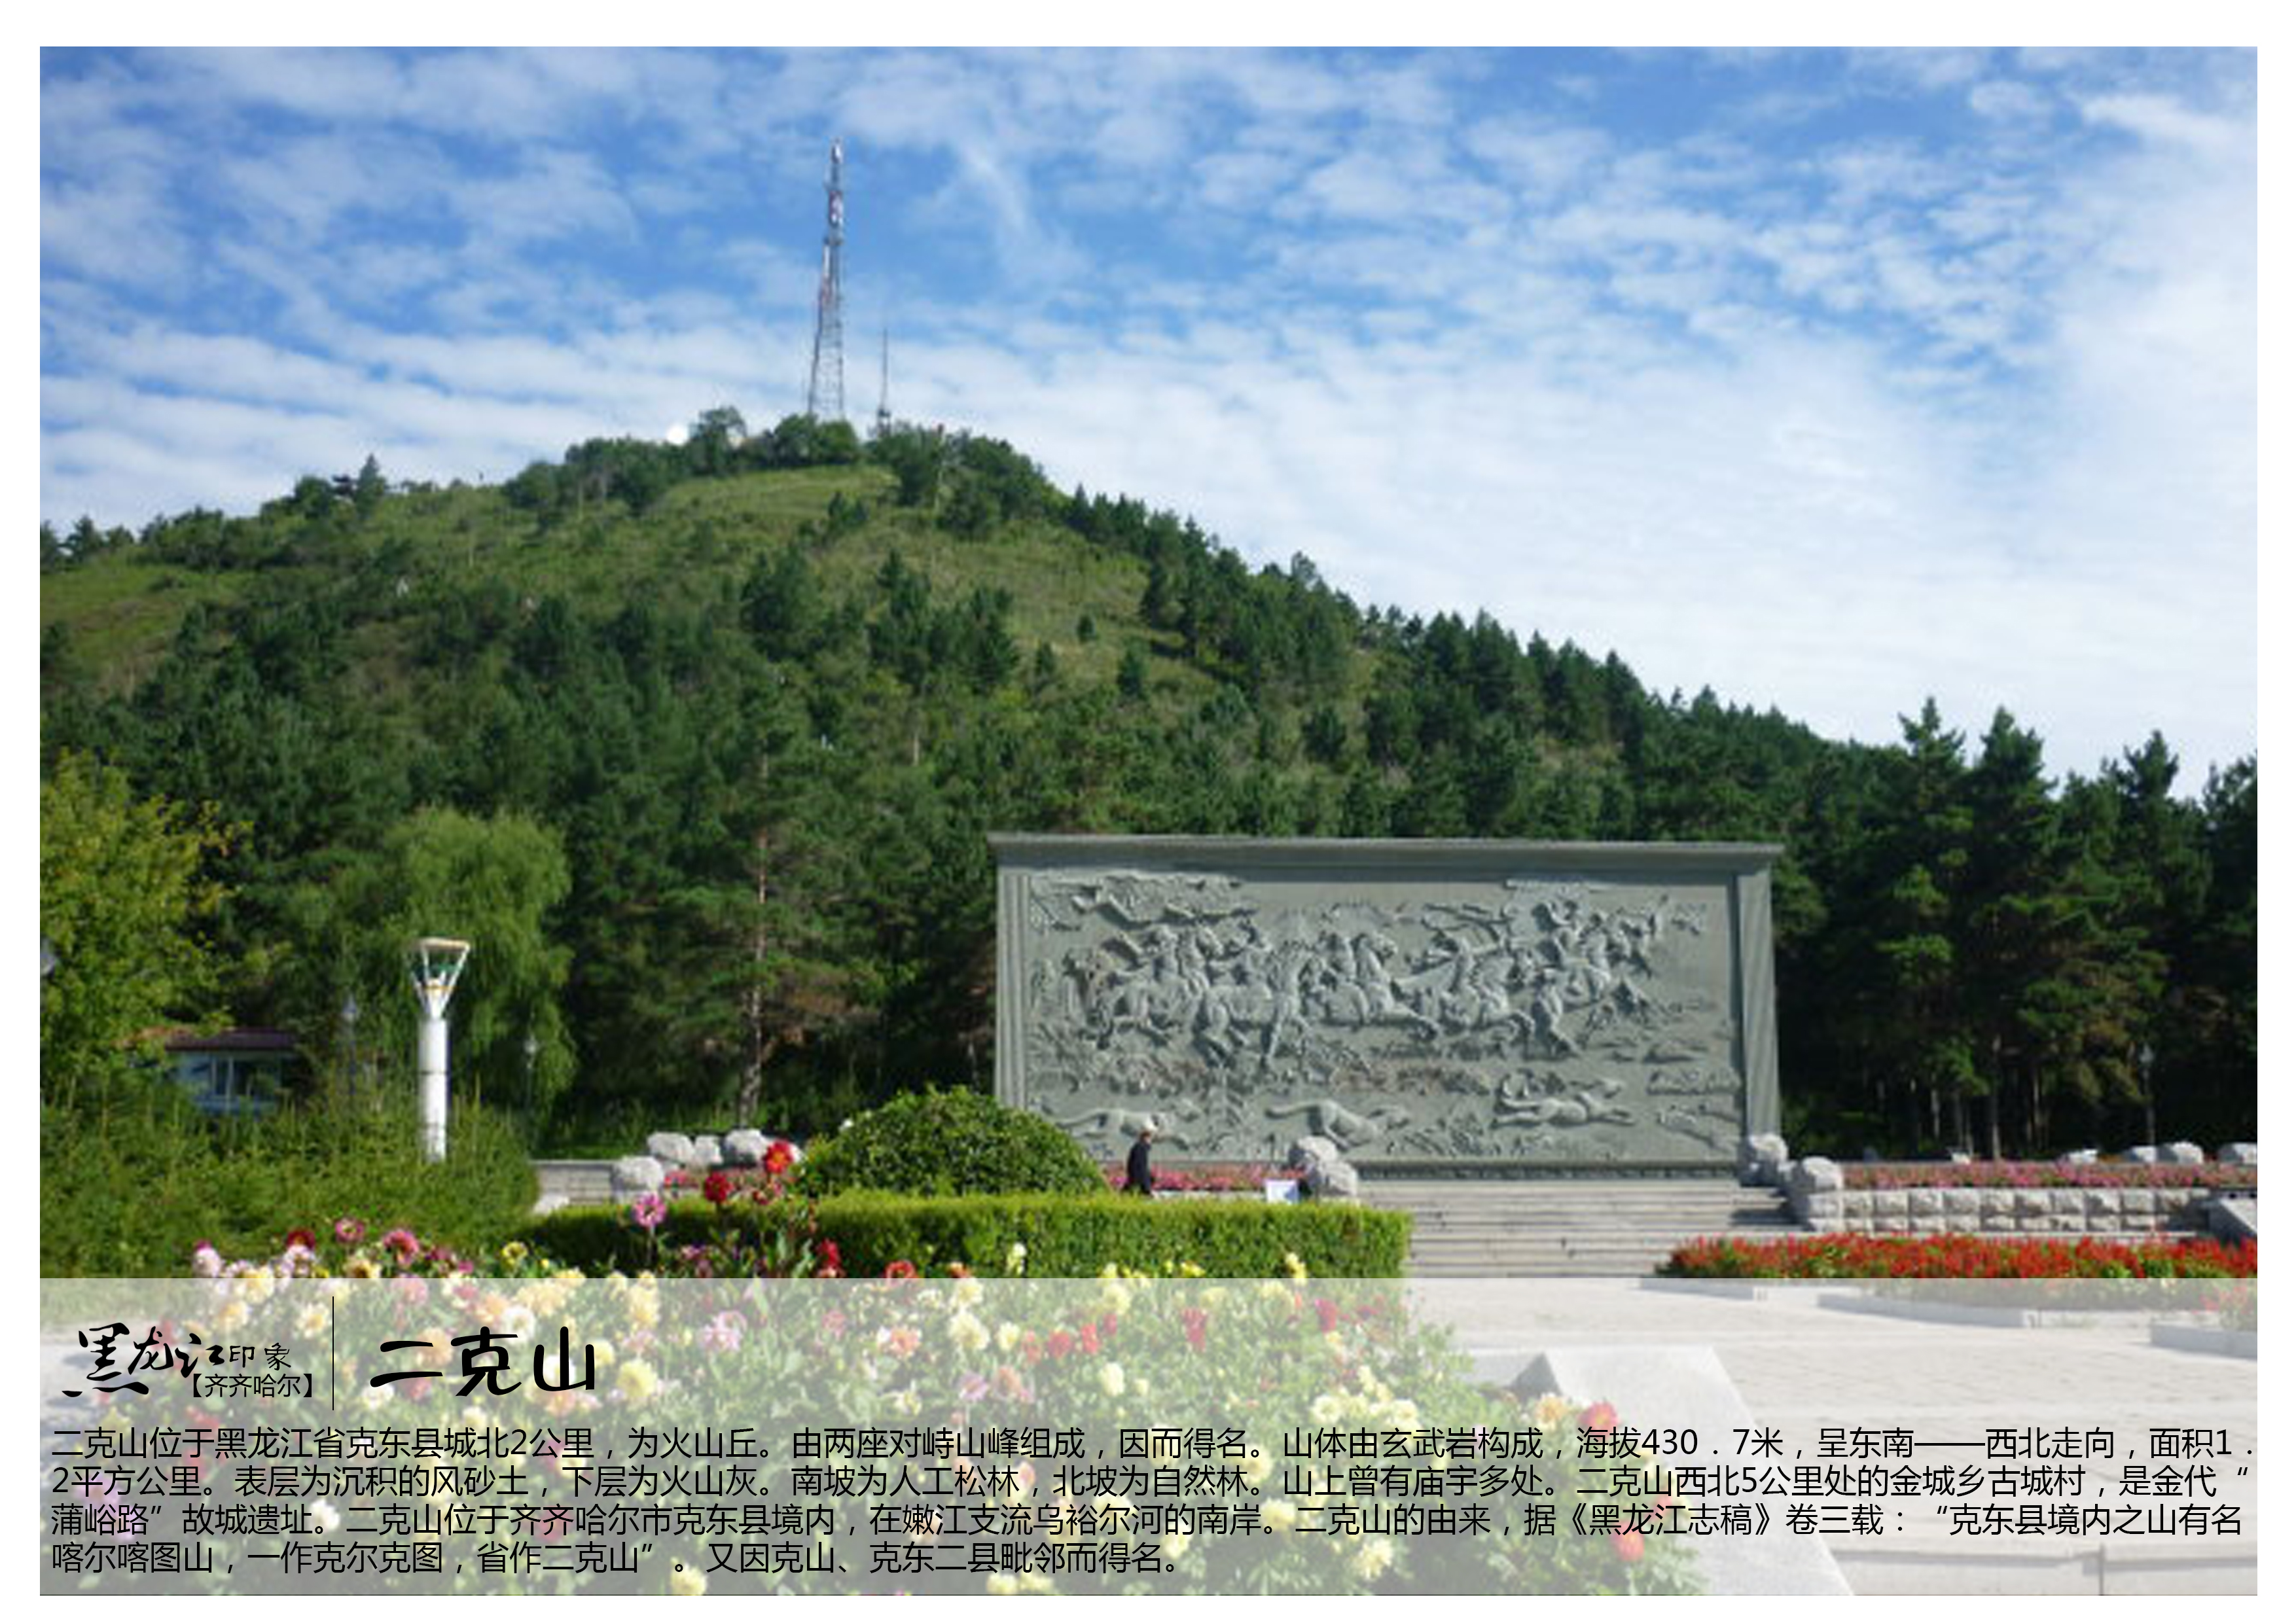 二克山位于黑龙江省克东县城北2公里,为火山丘